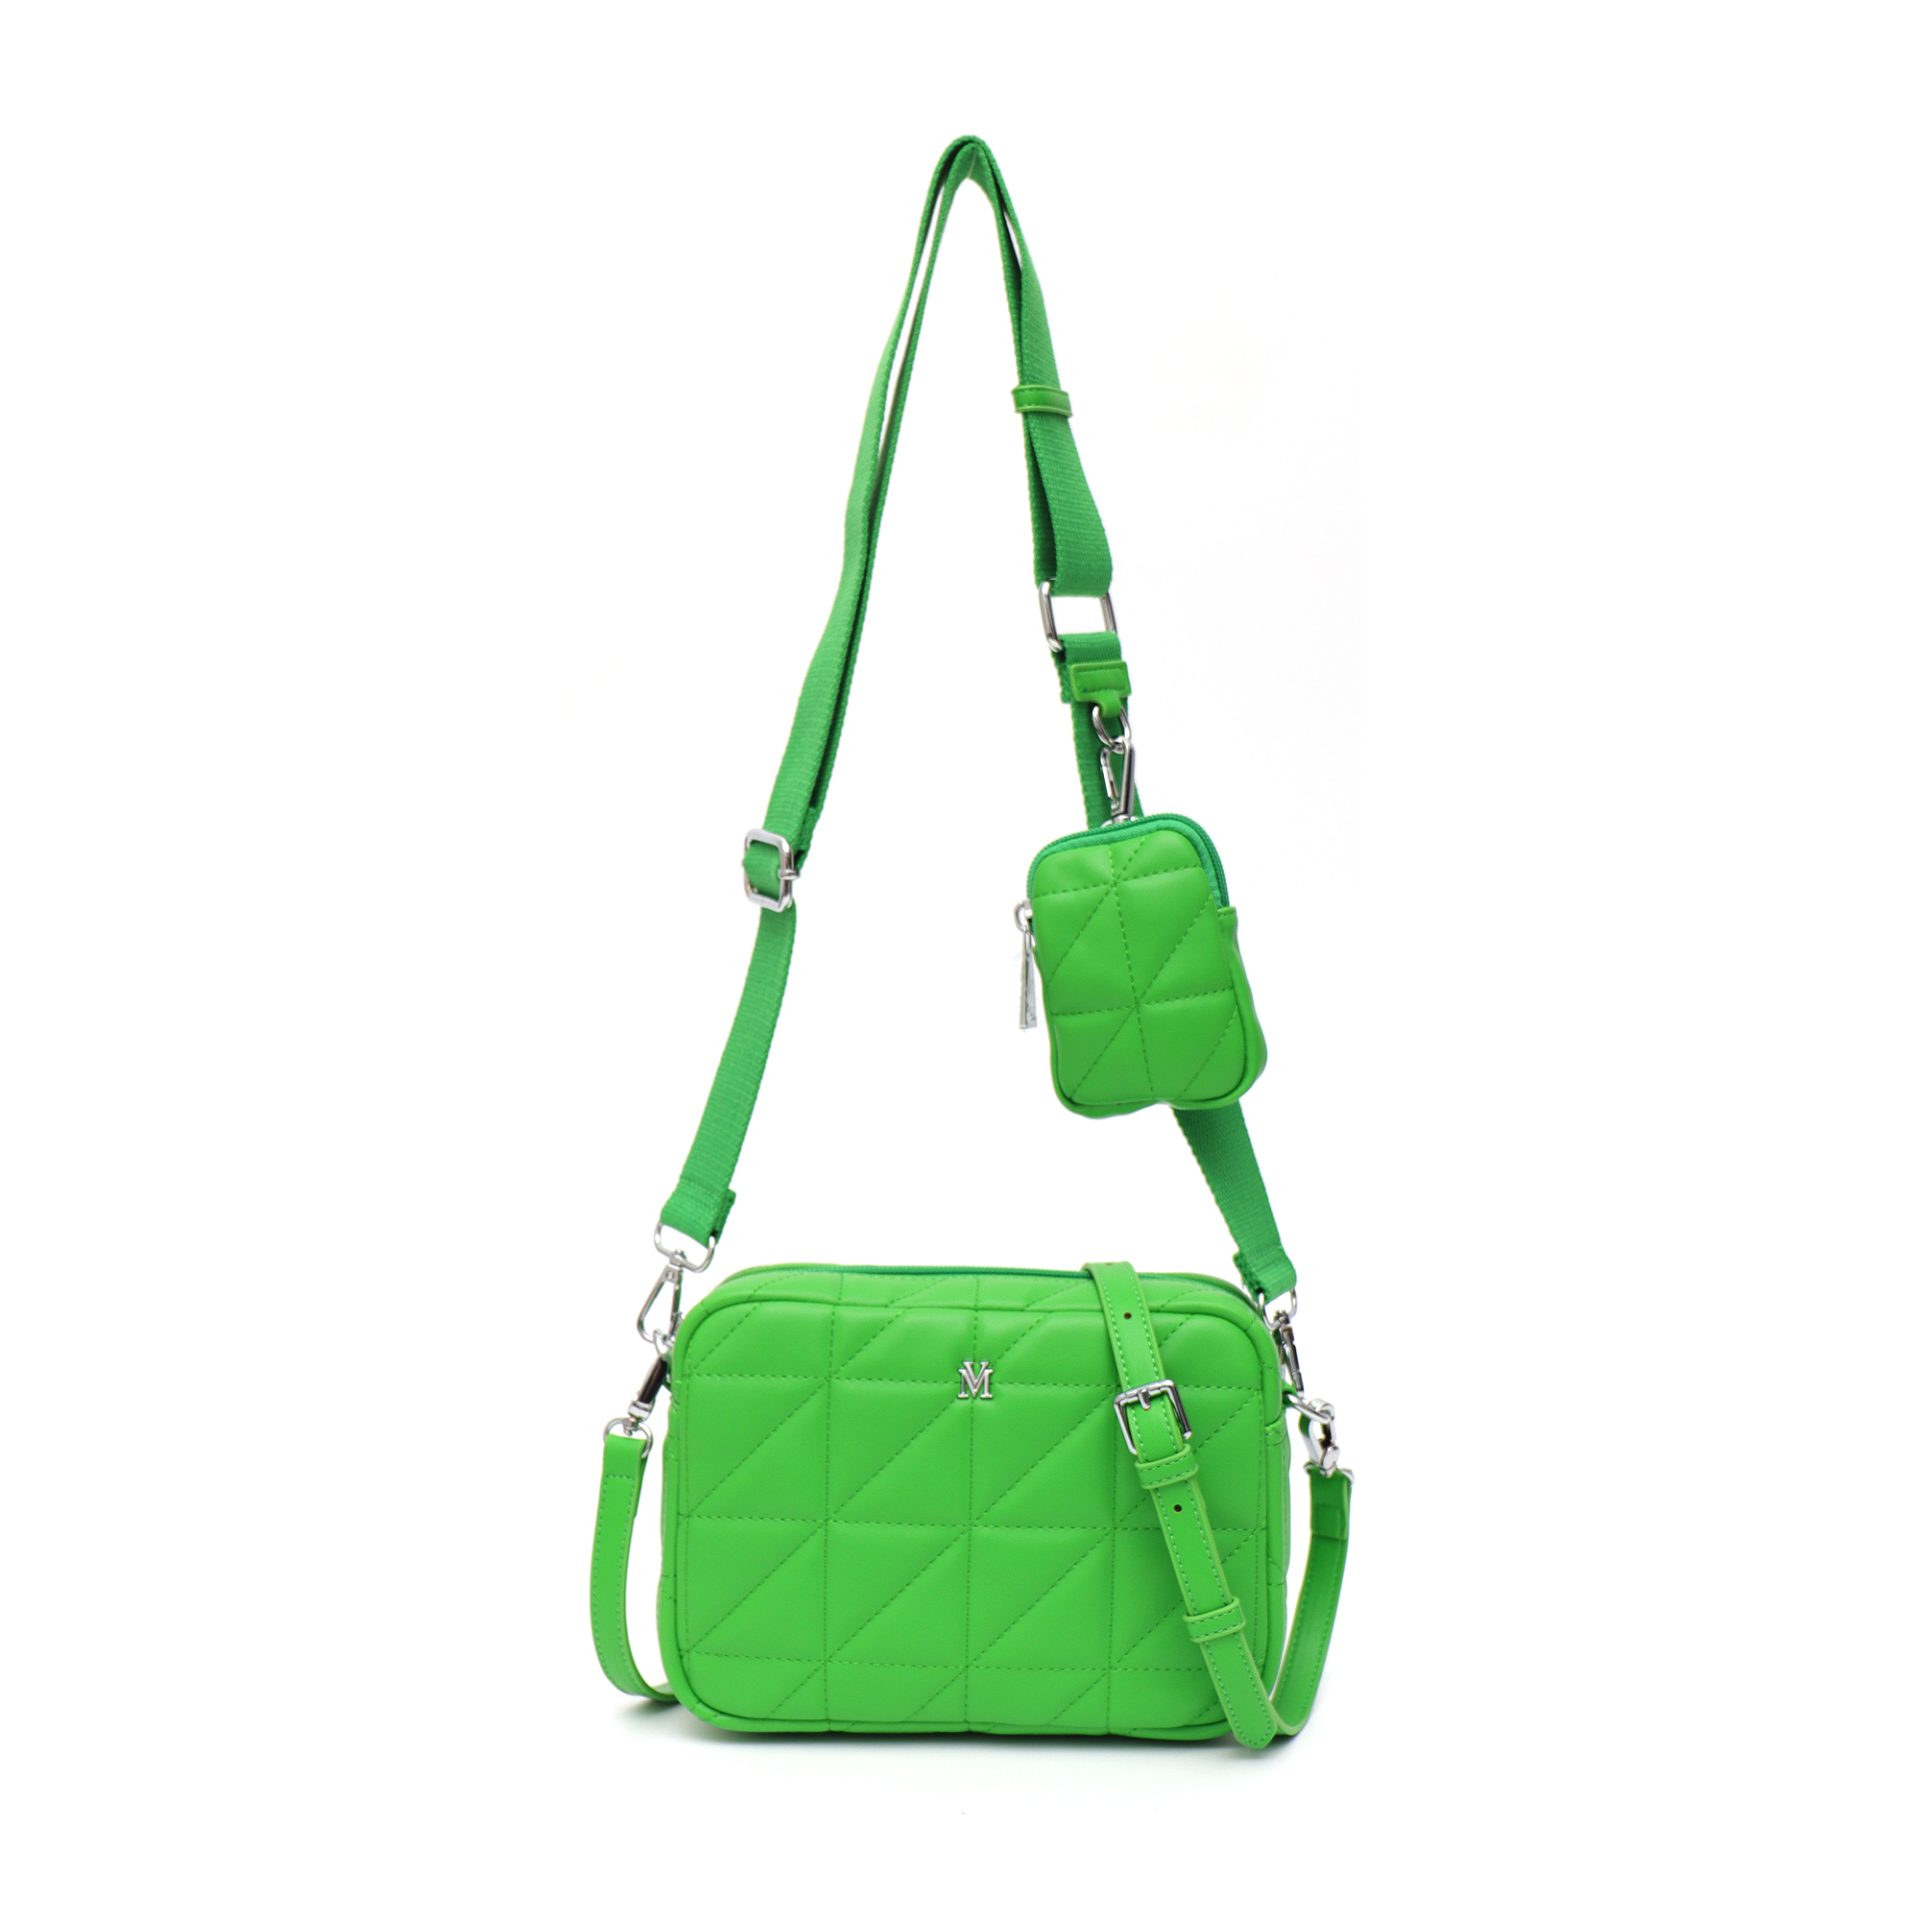 Vera May - BARTON Small Fashion bag - Green